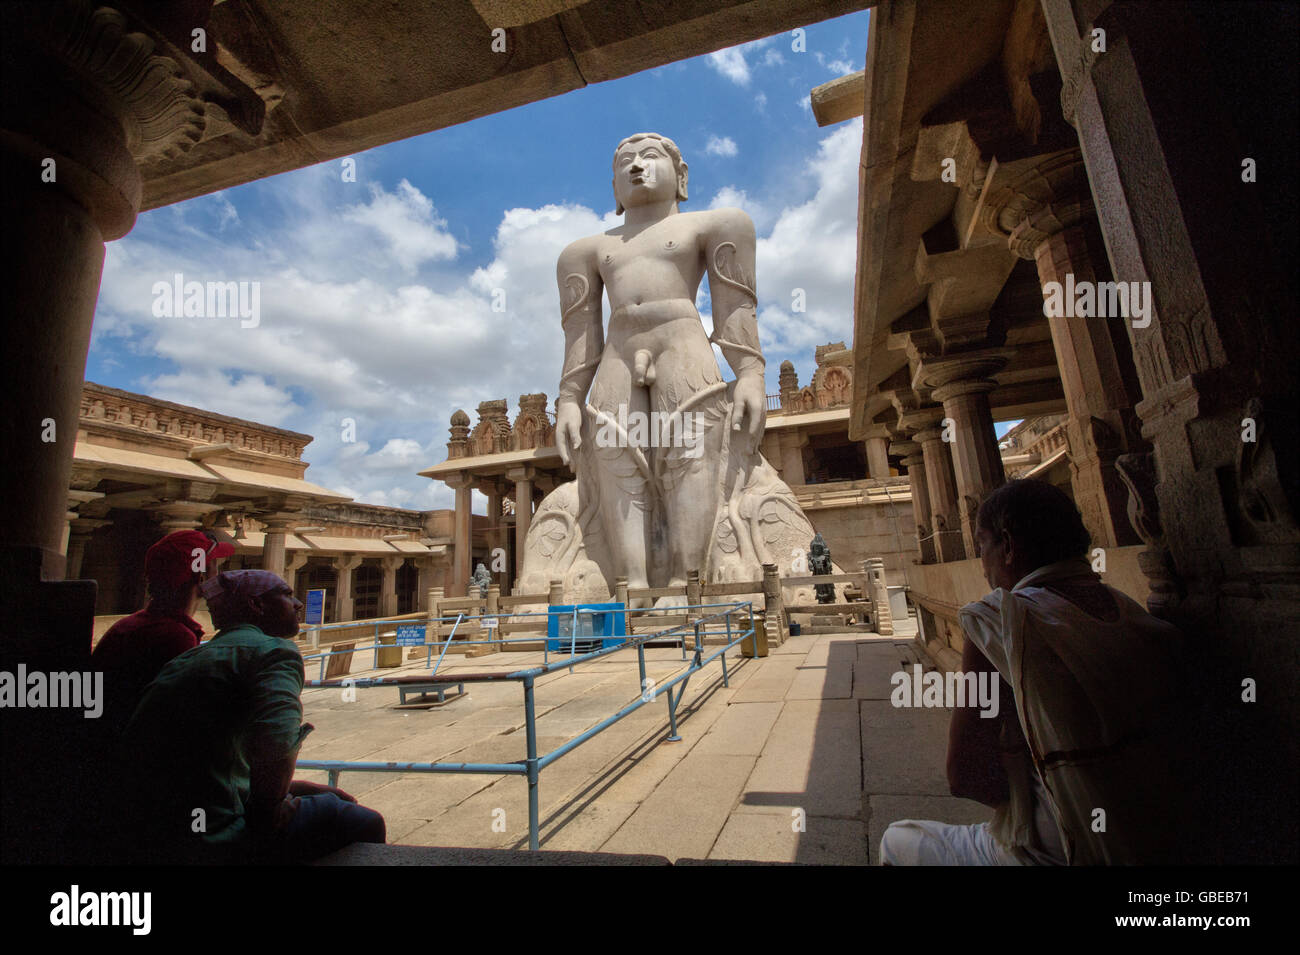 Die Statue des Gomateswara Bahubali, gelegen am Shravanabelagola, Hassan District, Karnataka, Indien Stockfoto